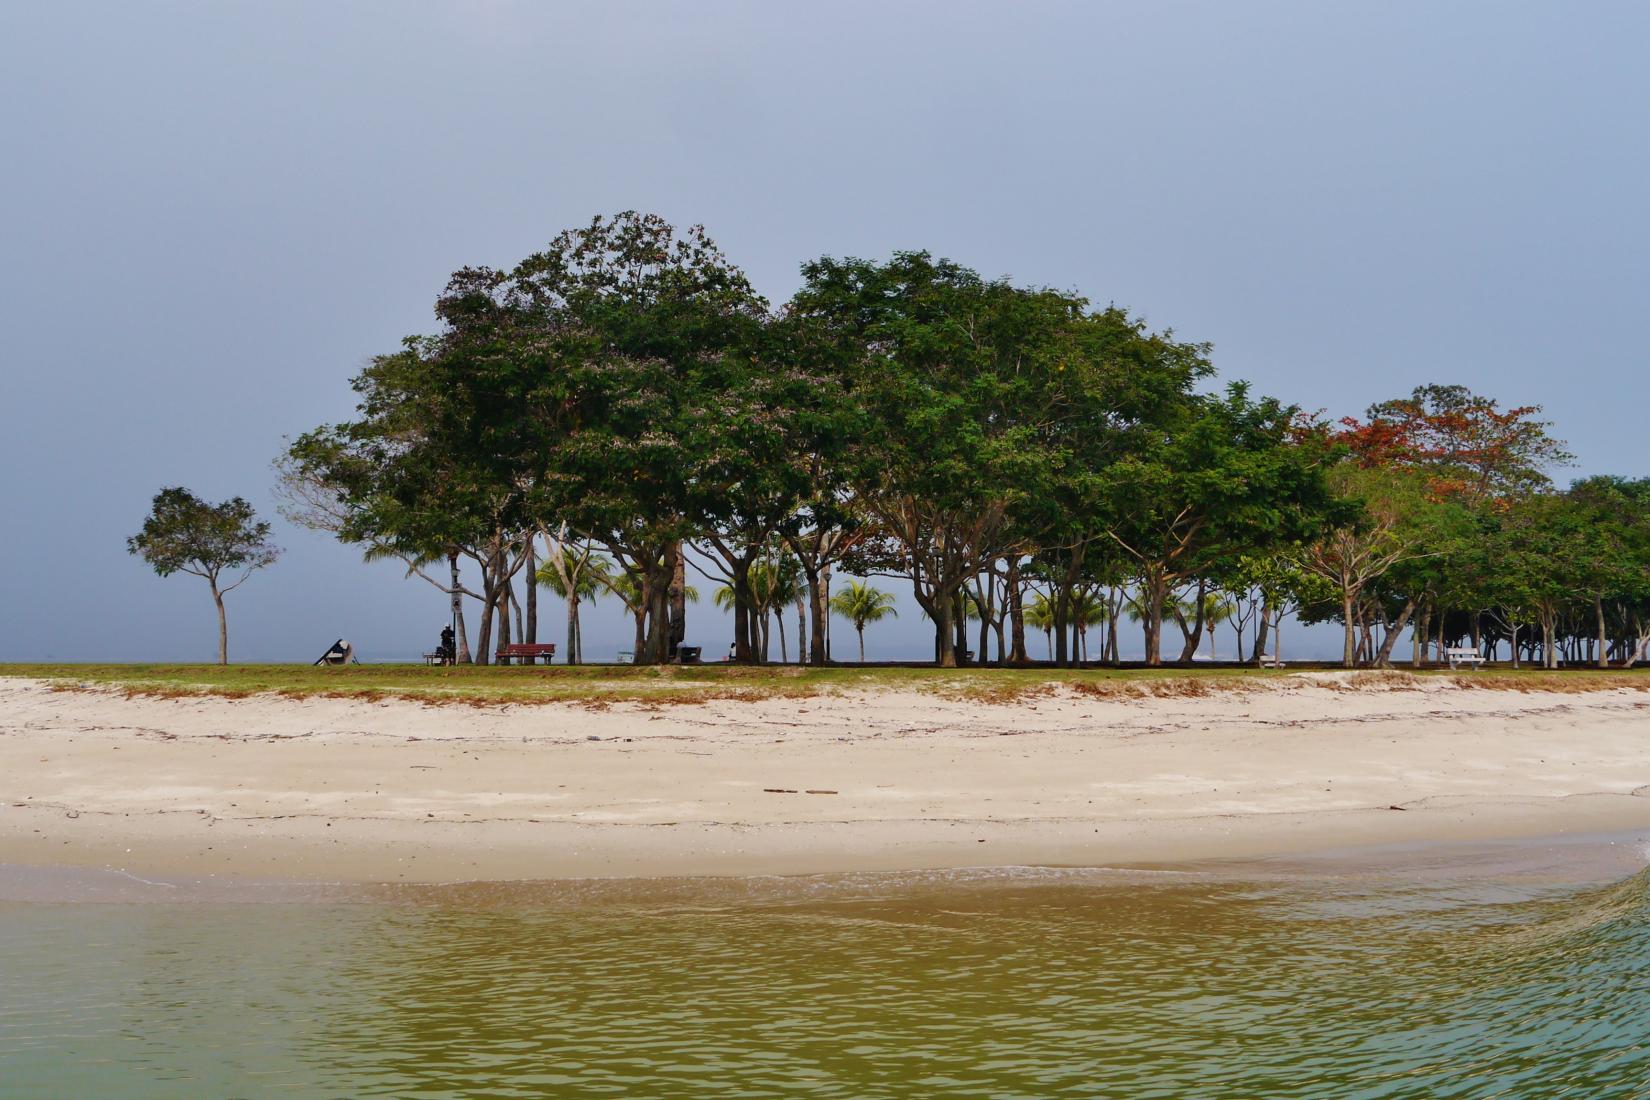 Sandee - Pulau Ubin